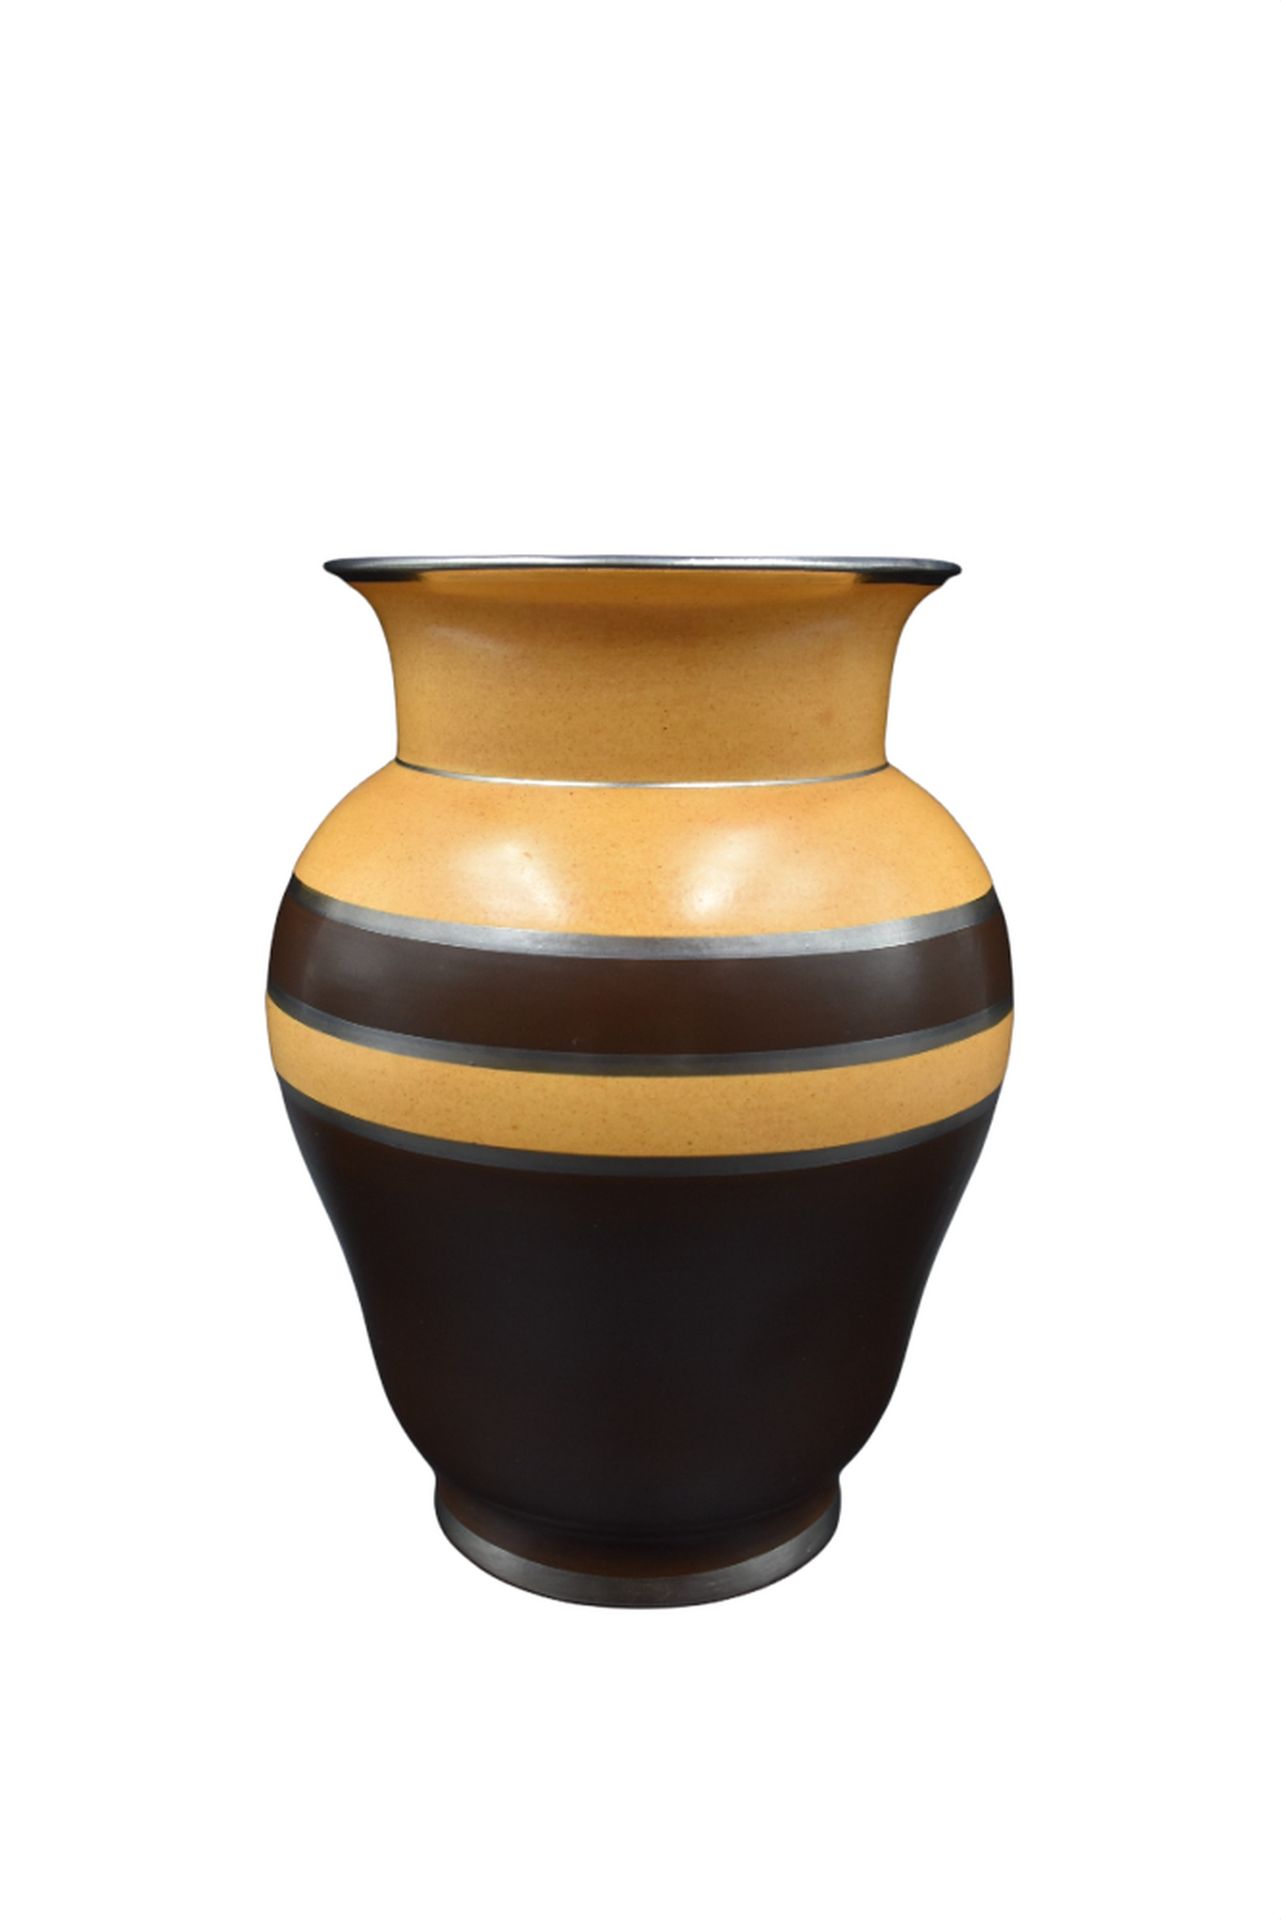 Null Boch Kéramis花瓶，带有简约的哑光装饰，上面有Jean Wind的字样。D.1818.高度：22厘米。 

NL: Boch Kéramis&hellip;